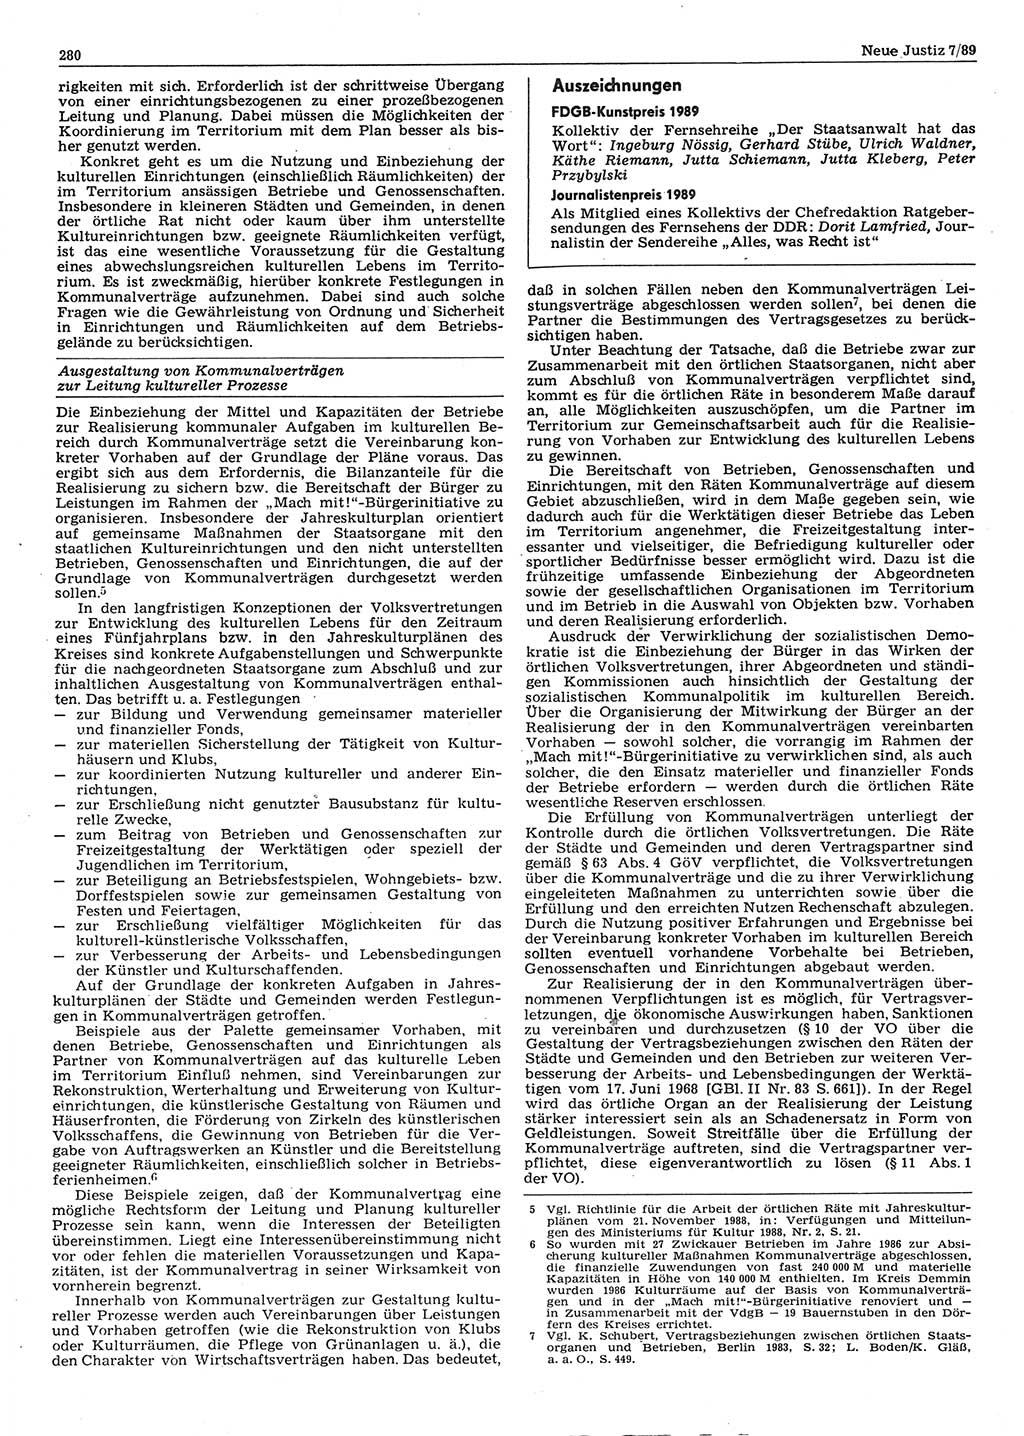 Neue Justiz (NJ), Zeitschrift für sozialistisches Recht und Gesetzlichkeit [Deutsche Demokratische Republik (DDR)], 43. Jahrgang 1989, Seite 280 (NJ DDR 1989, S. 280)